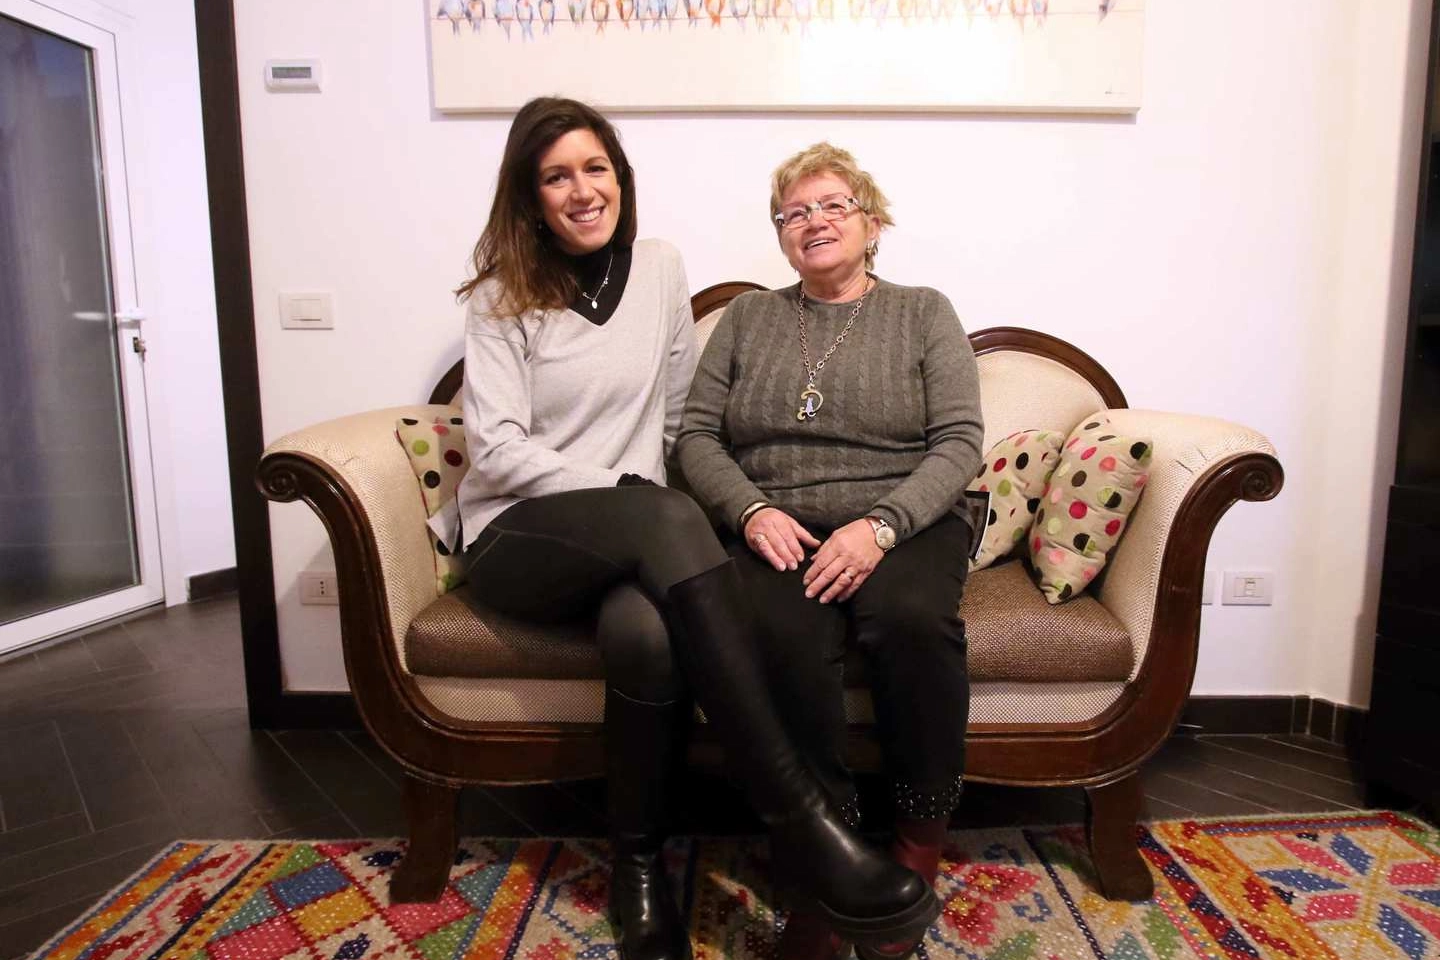 Elena Giovanardi e la mamma Elisabetta Bordiga nella casa igloo di via Lepanto